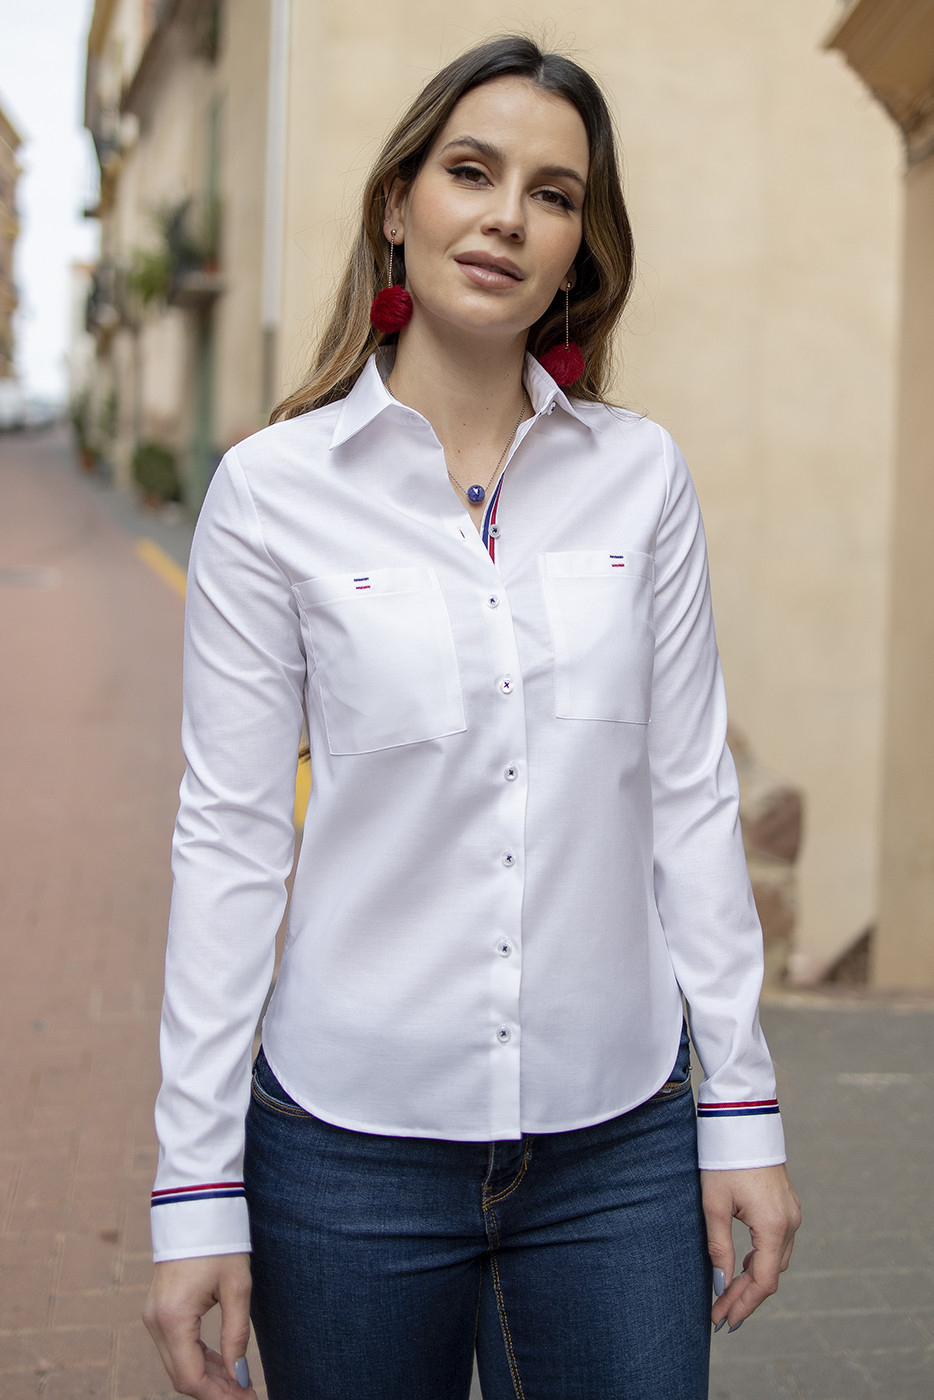 Camisa mujer tejido oxford blanco con dos bolsillos y cinta en botonadura y puños